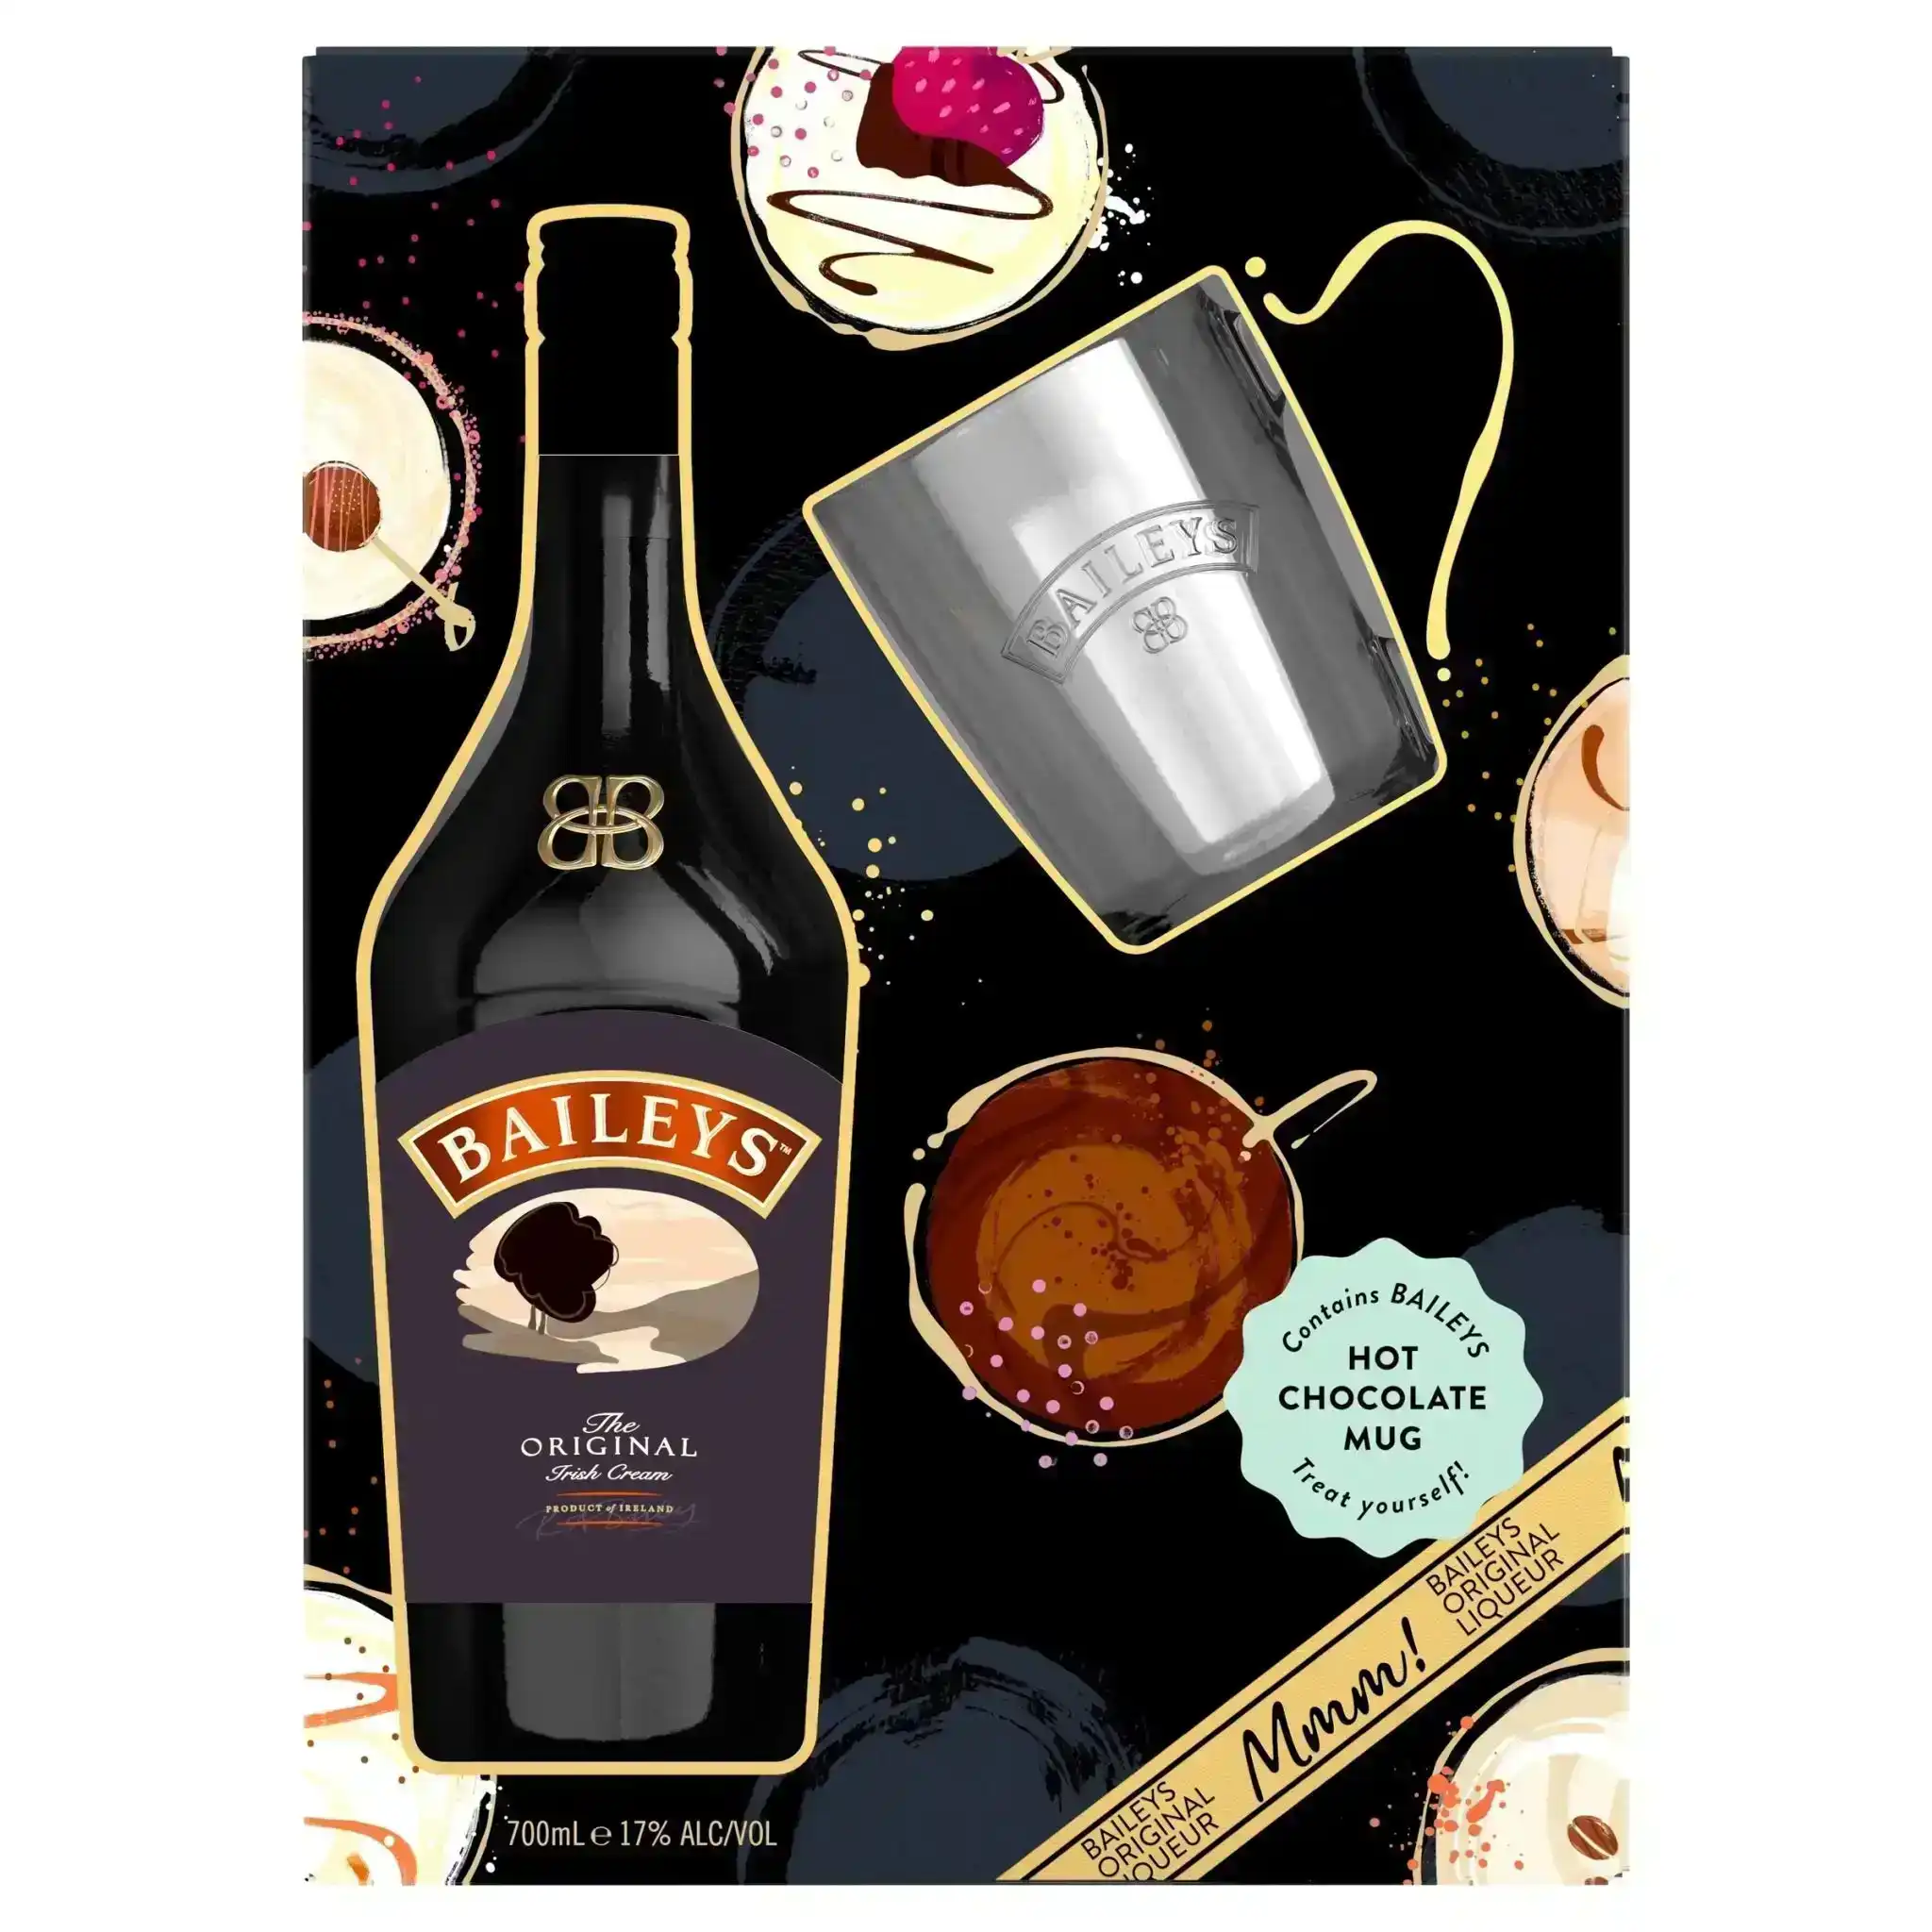 Baileys Irish Cream Hot Chocolate Mug Gift Pack (700mL)